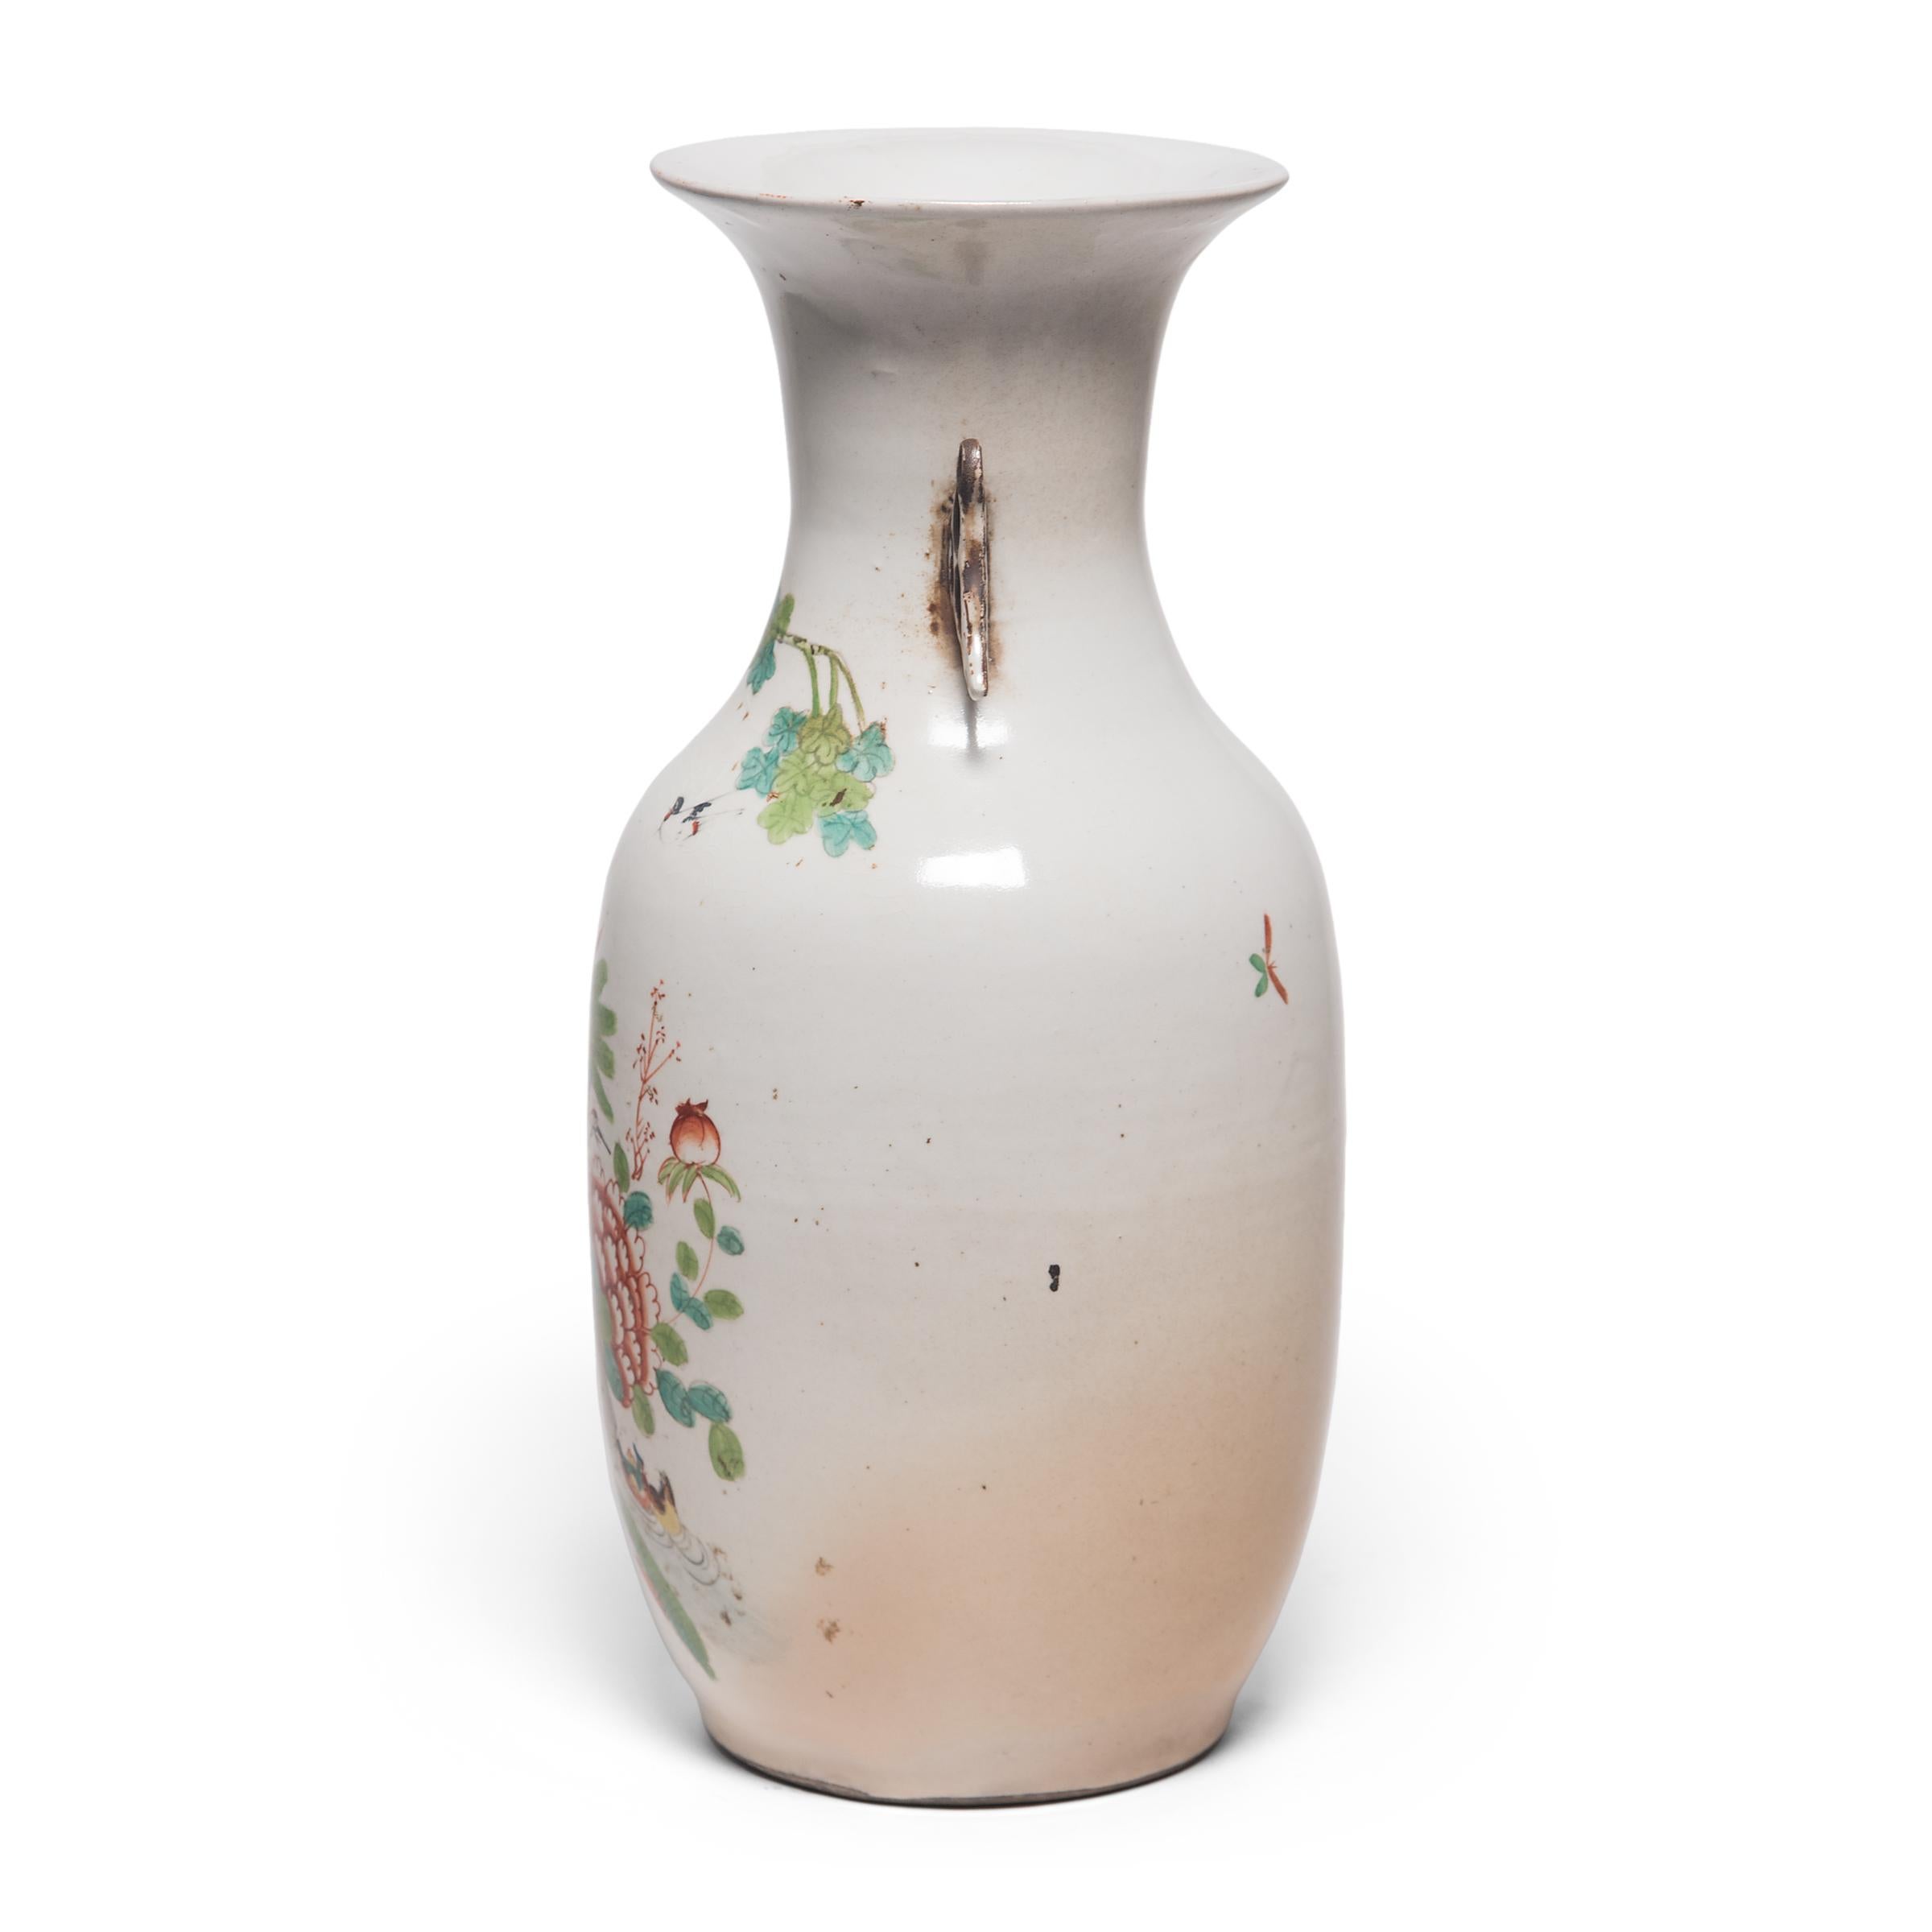 Die Phönixschwanzvase stammt aus der Bronzezeit und ist aufgrund ihrer klaren Linien und anmutigen Kurven bis heute eine beliebte Form. Diese Vase aus der Zeit um 1900 zeigt einen Pfau in einer schönen Gartenlandschaft. Die aufwändig und meisterhaft